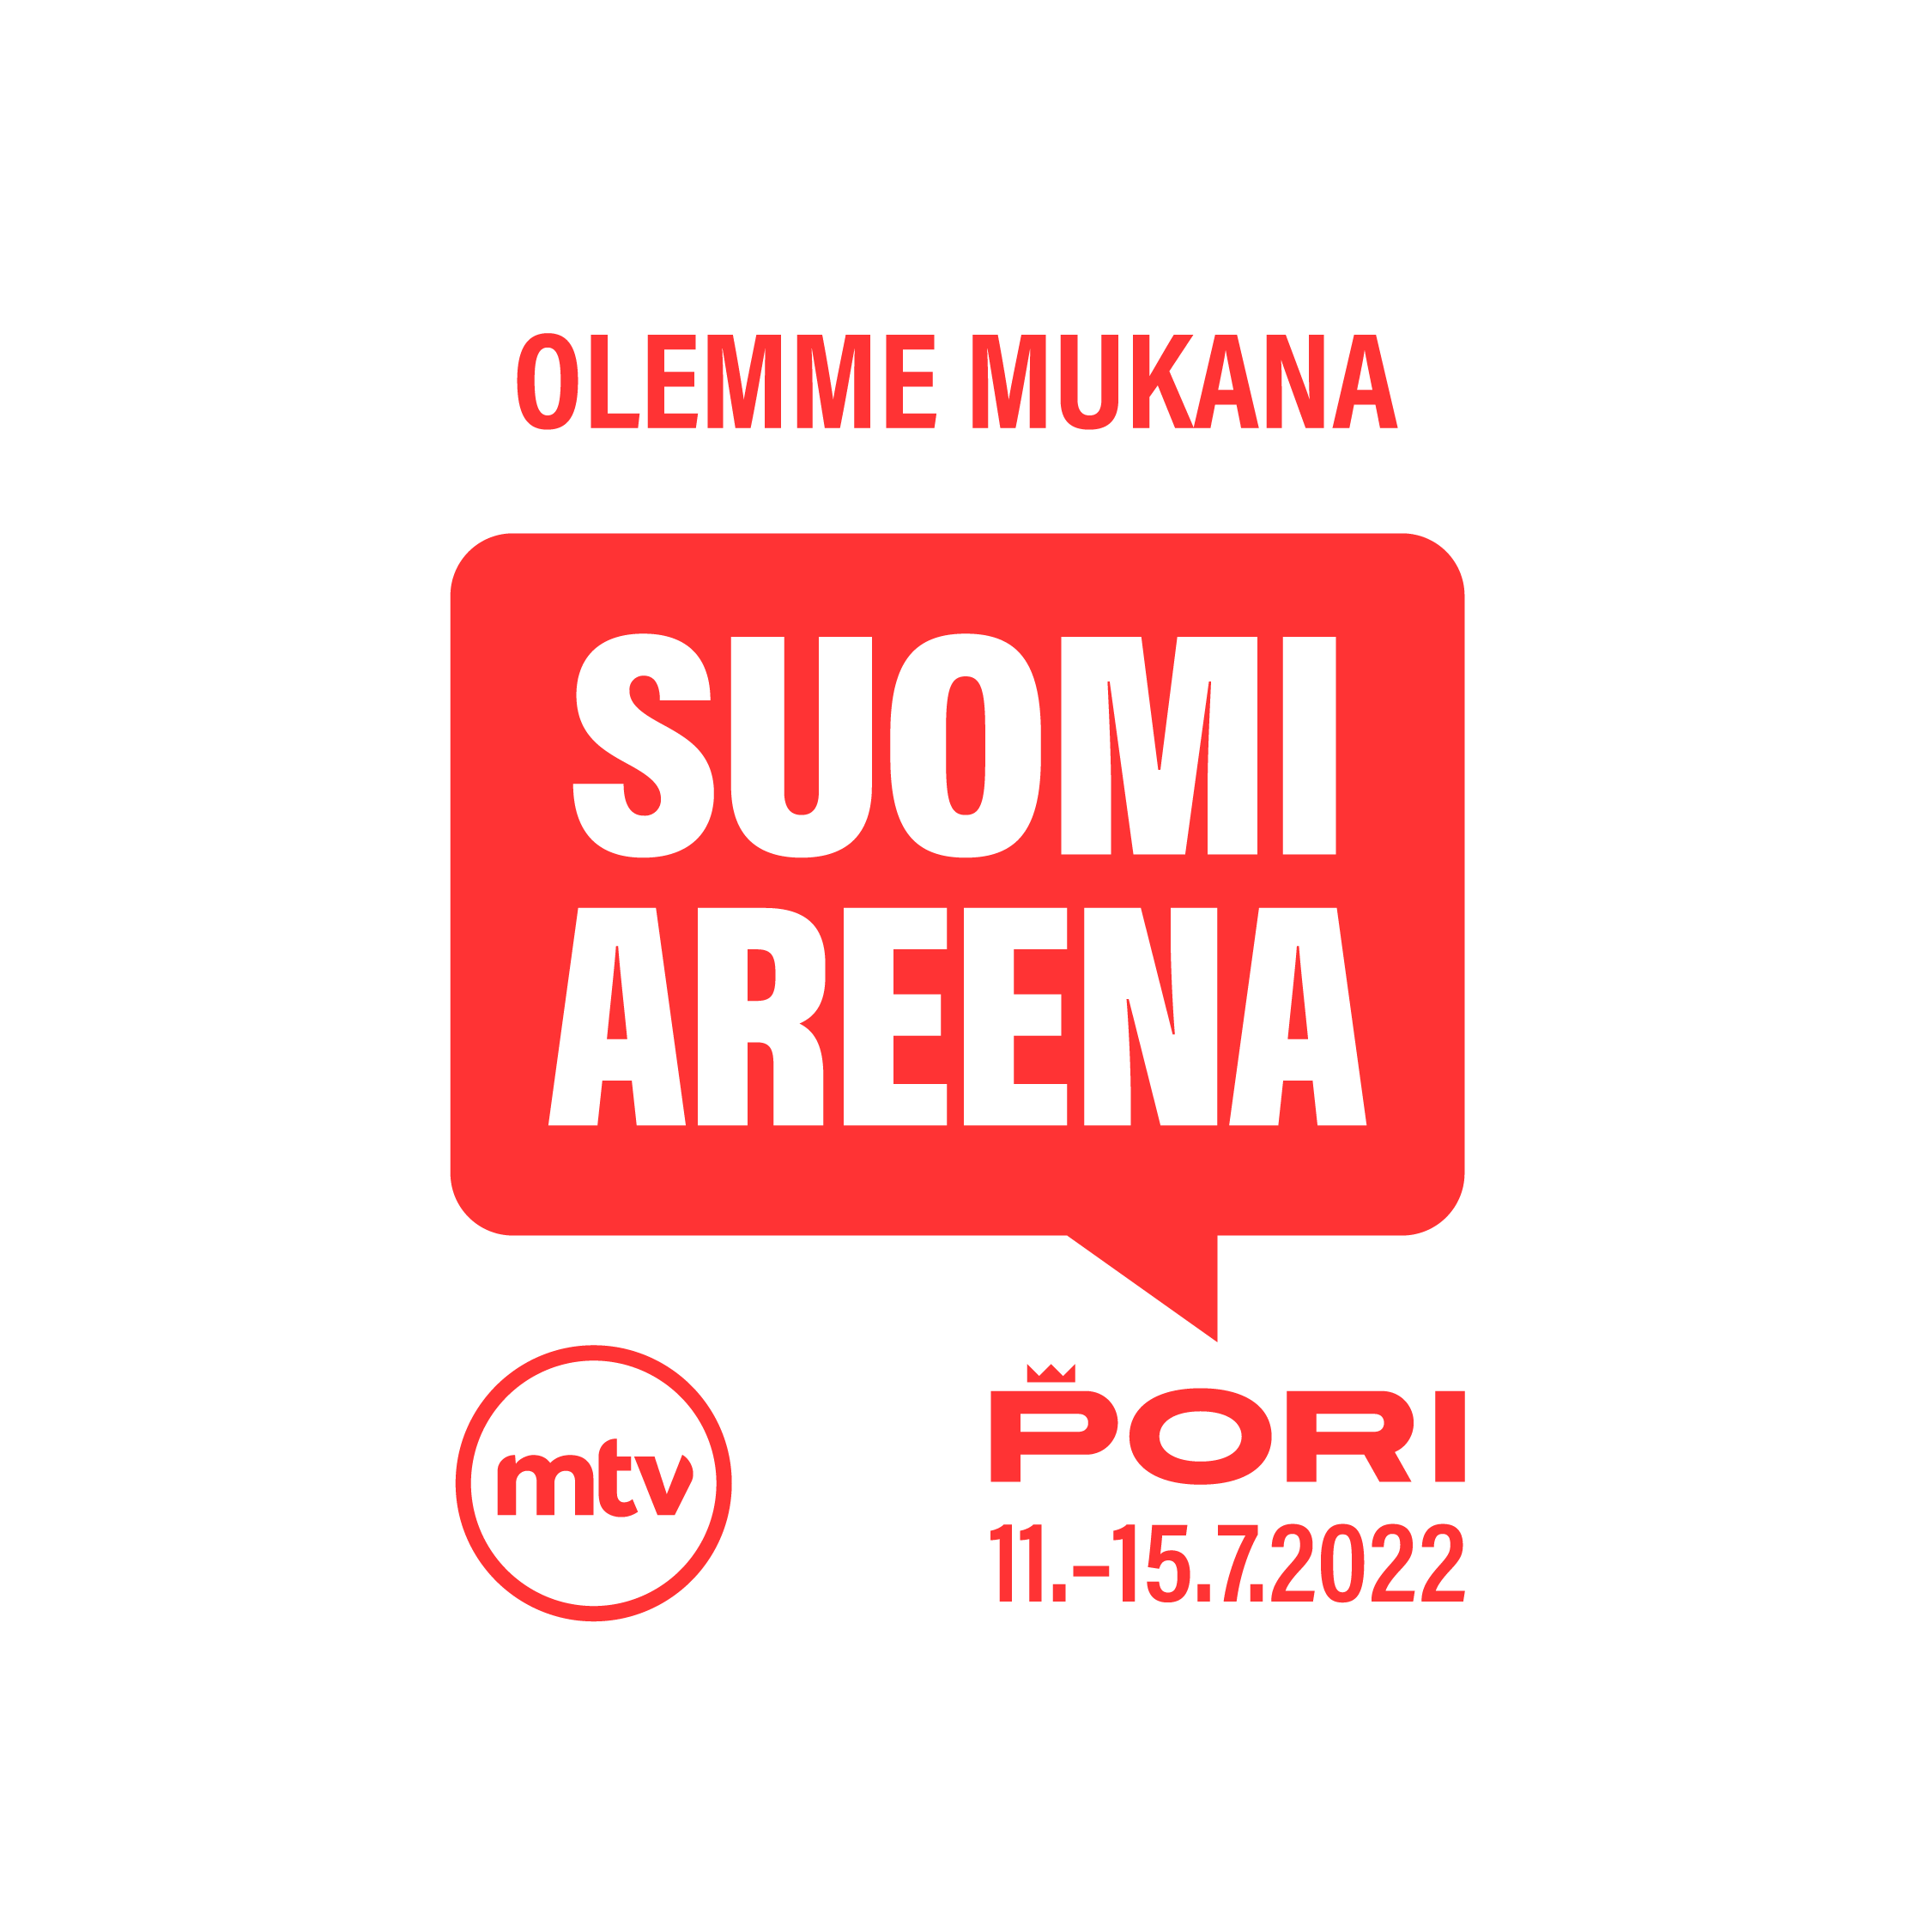 Kuvassa punainen SuomiAreena-puhekuplalogo ja teksti Olemme mukana. Pori 11.-15.2022.